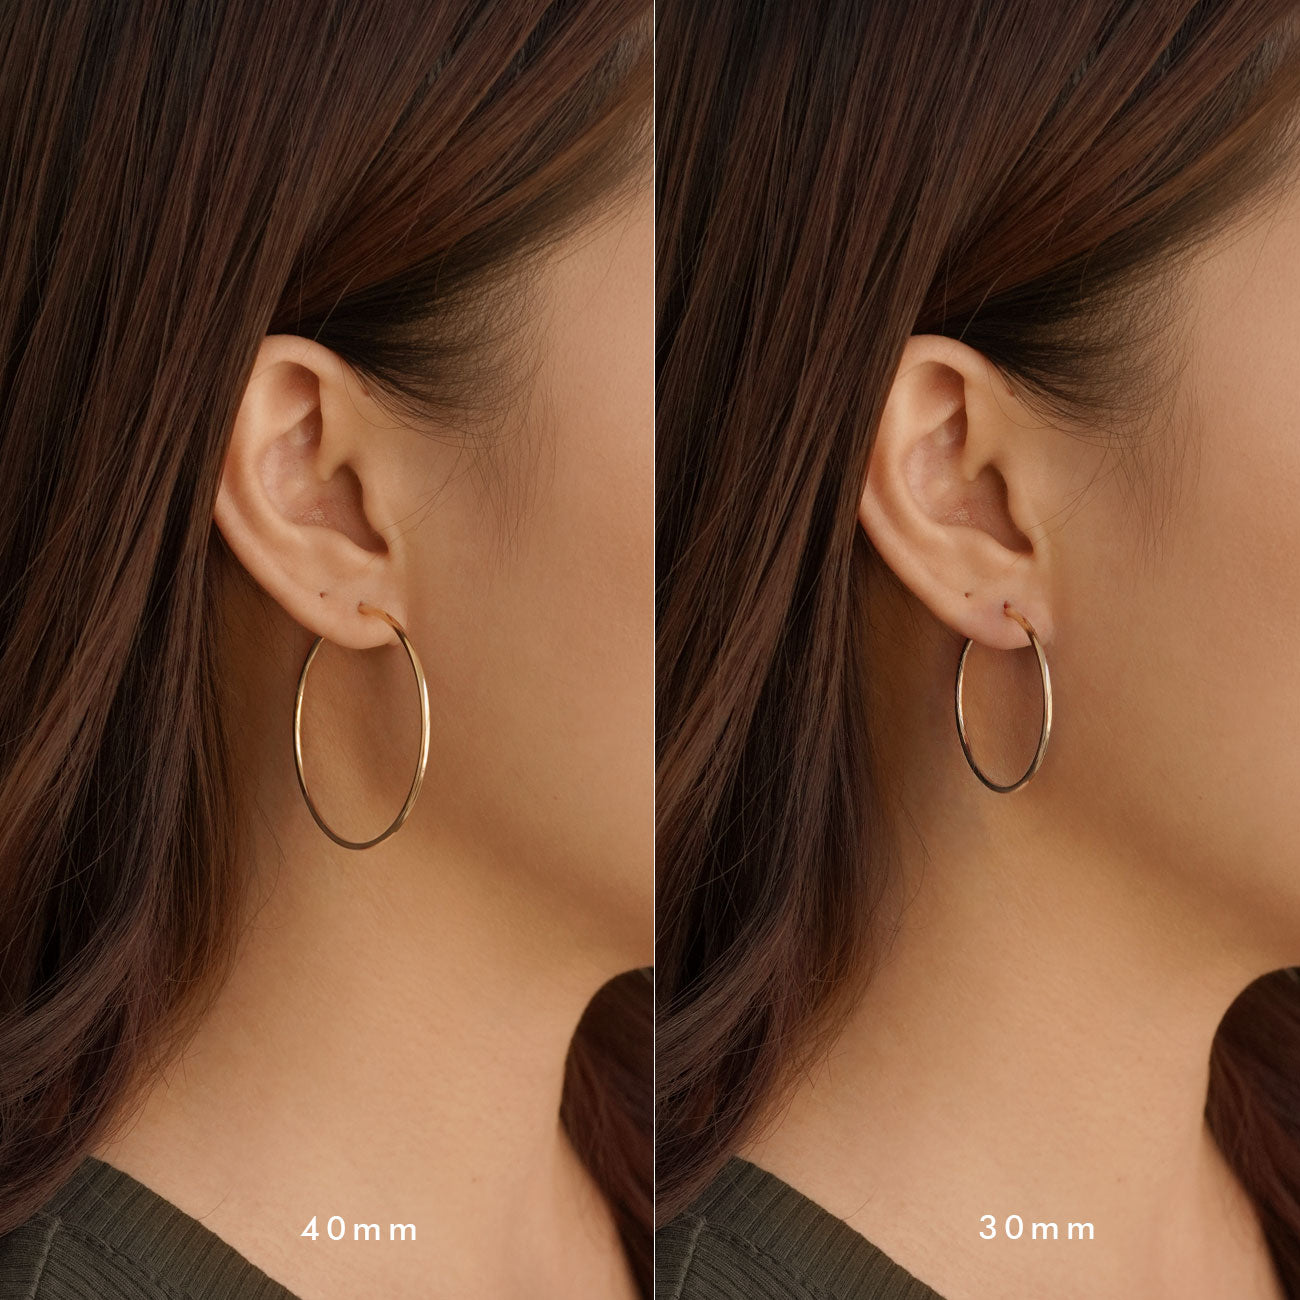 Gold Vermeil Medium Hoop Earrings, Thin Gold Hoops – AMYO Jewelry